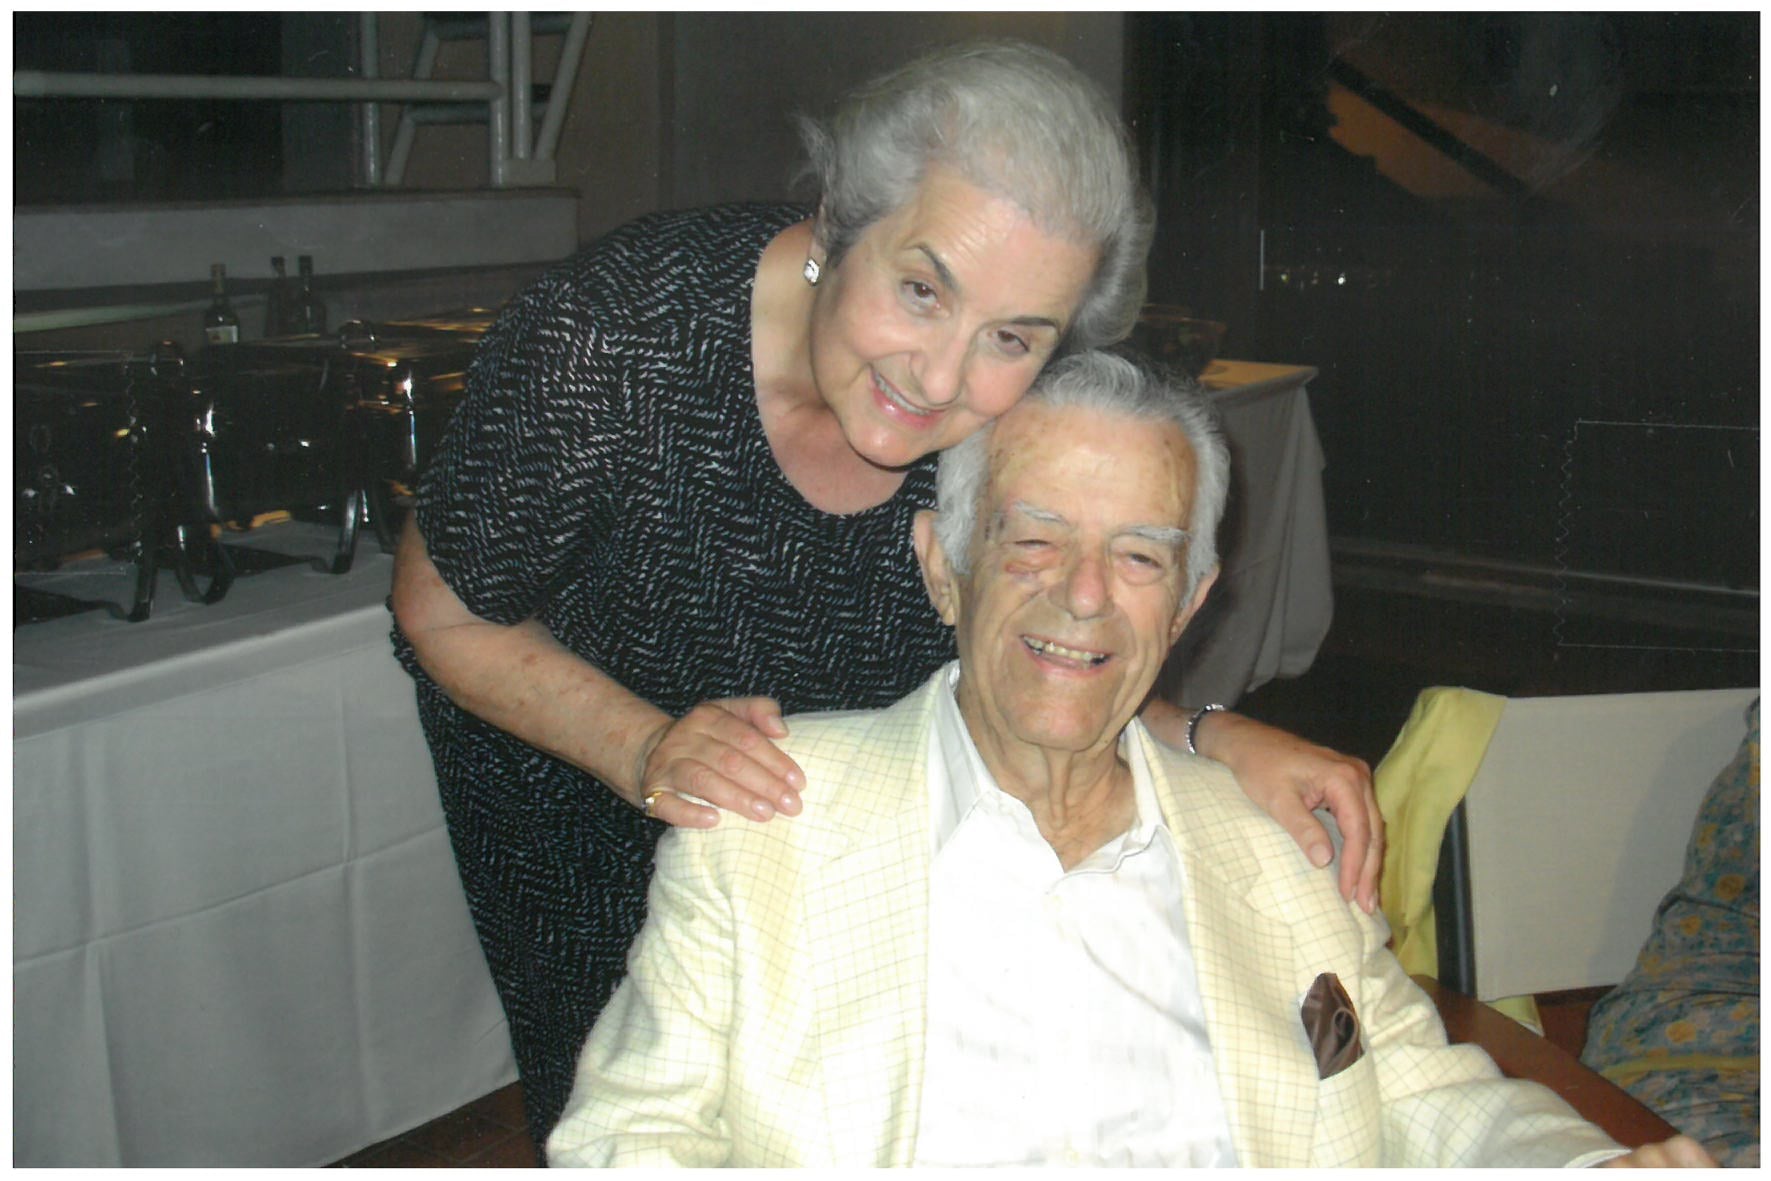 Ιστορικές Βιογραφίες της Λέσχη Ανδρίων – Andrion Club: Πλοίαρχος Γιαννούλης Π. Μωραΐτης (1913 – 2010) και Μαρία Ι. Μωραΐτου (1934 – 2014)